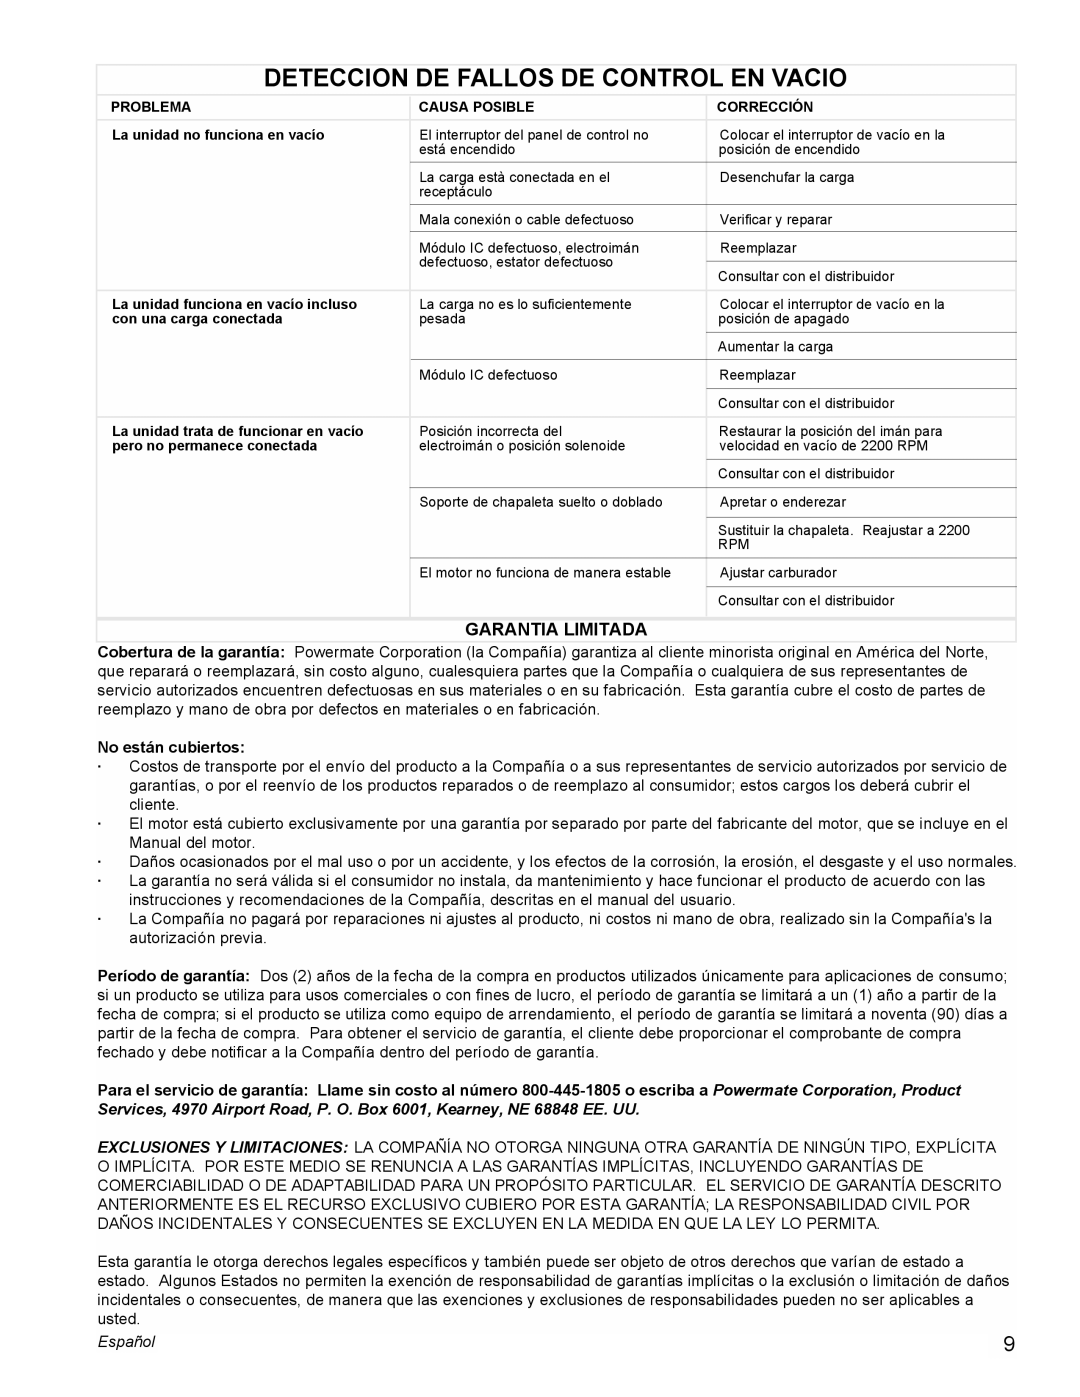 Powermate PM0605000 manual Deteccion De Fallos De Control En Vacio, Garantia Limitada, No están cubiertos, Español 